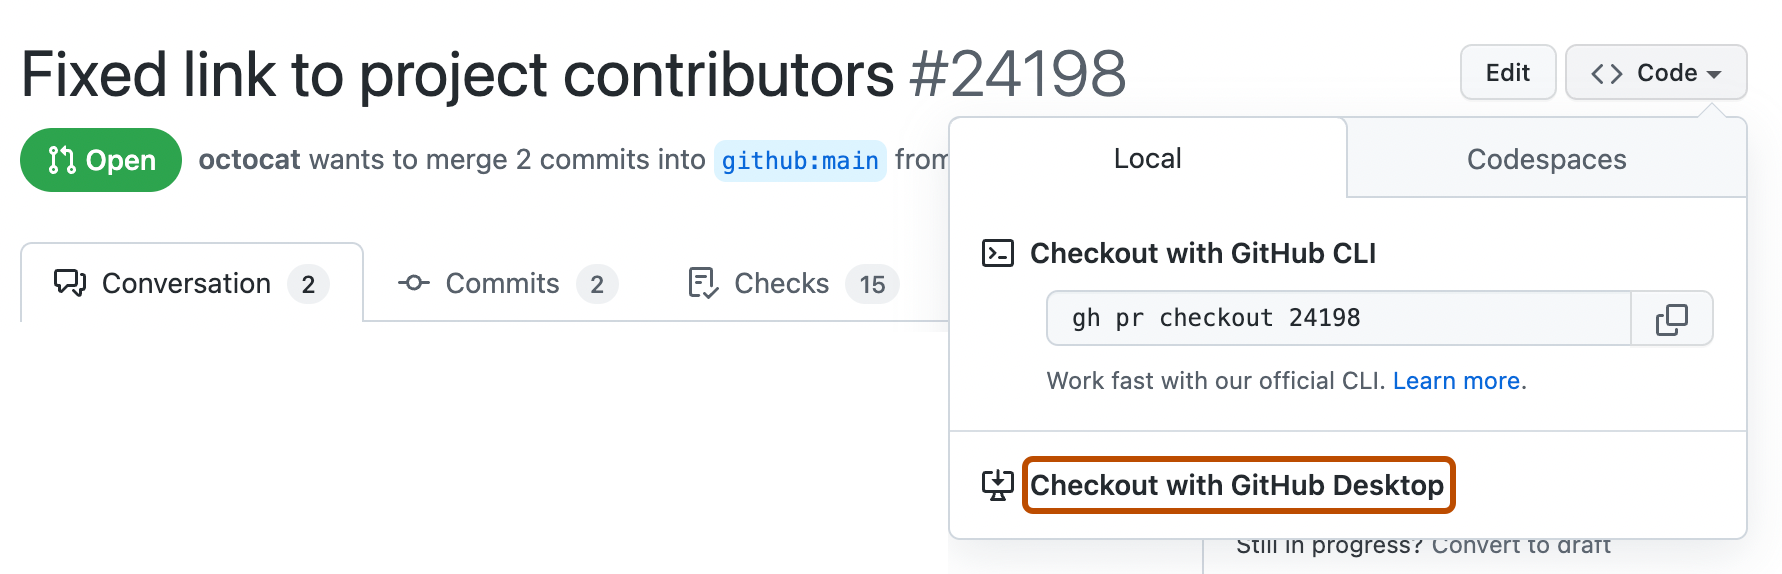 Снимок экрана: запрос на вытягивание на GitHub. Раскрывающееся меню "Код" будет развернуто, а кнопка с меткой "Извлечь с помощью GitHub Desktop" выделена оранжевым цветом.